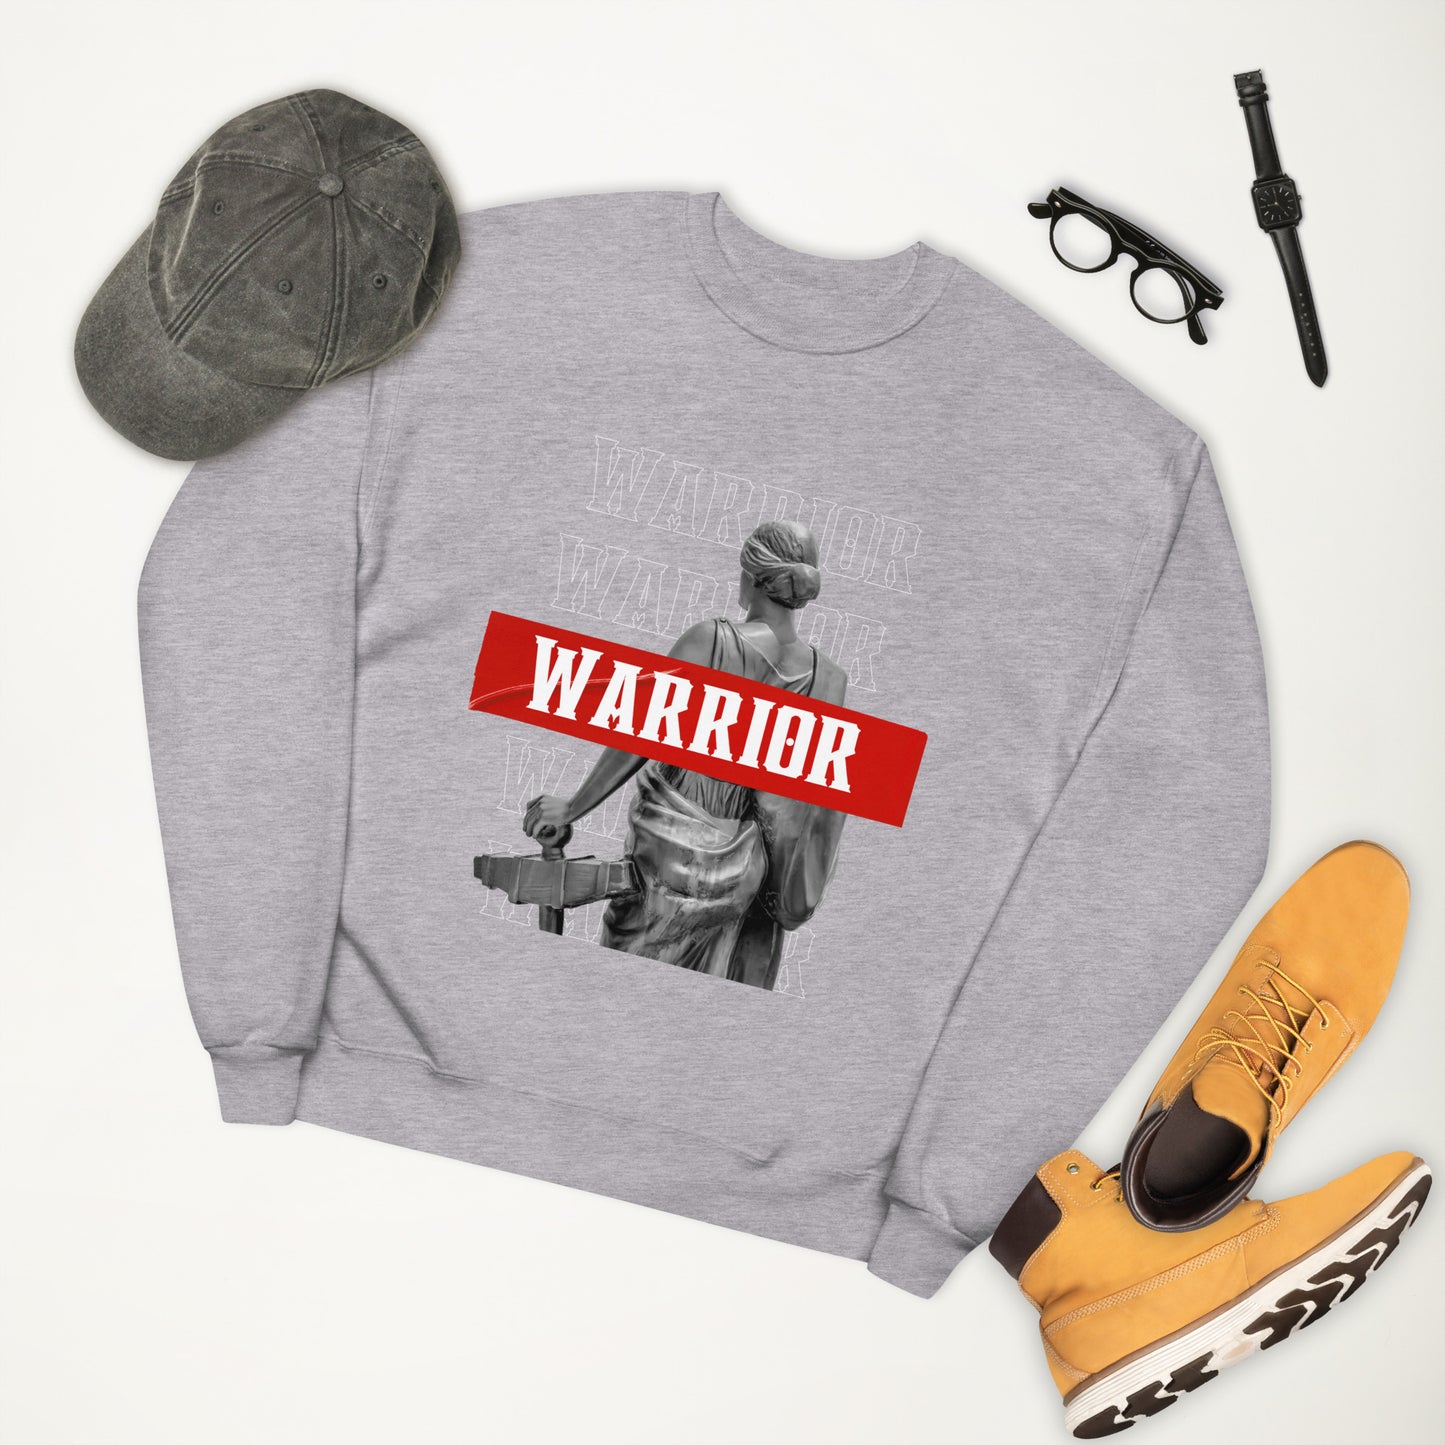 Warrior fleece sweatshirt